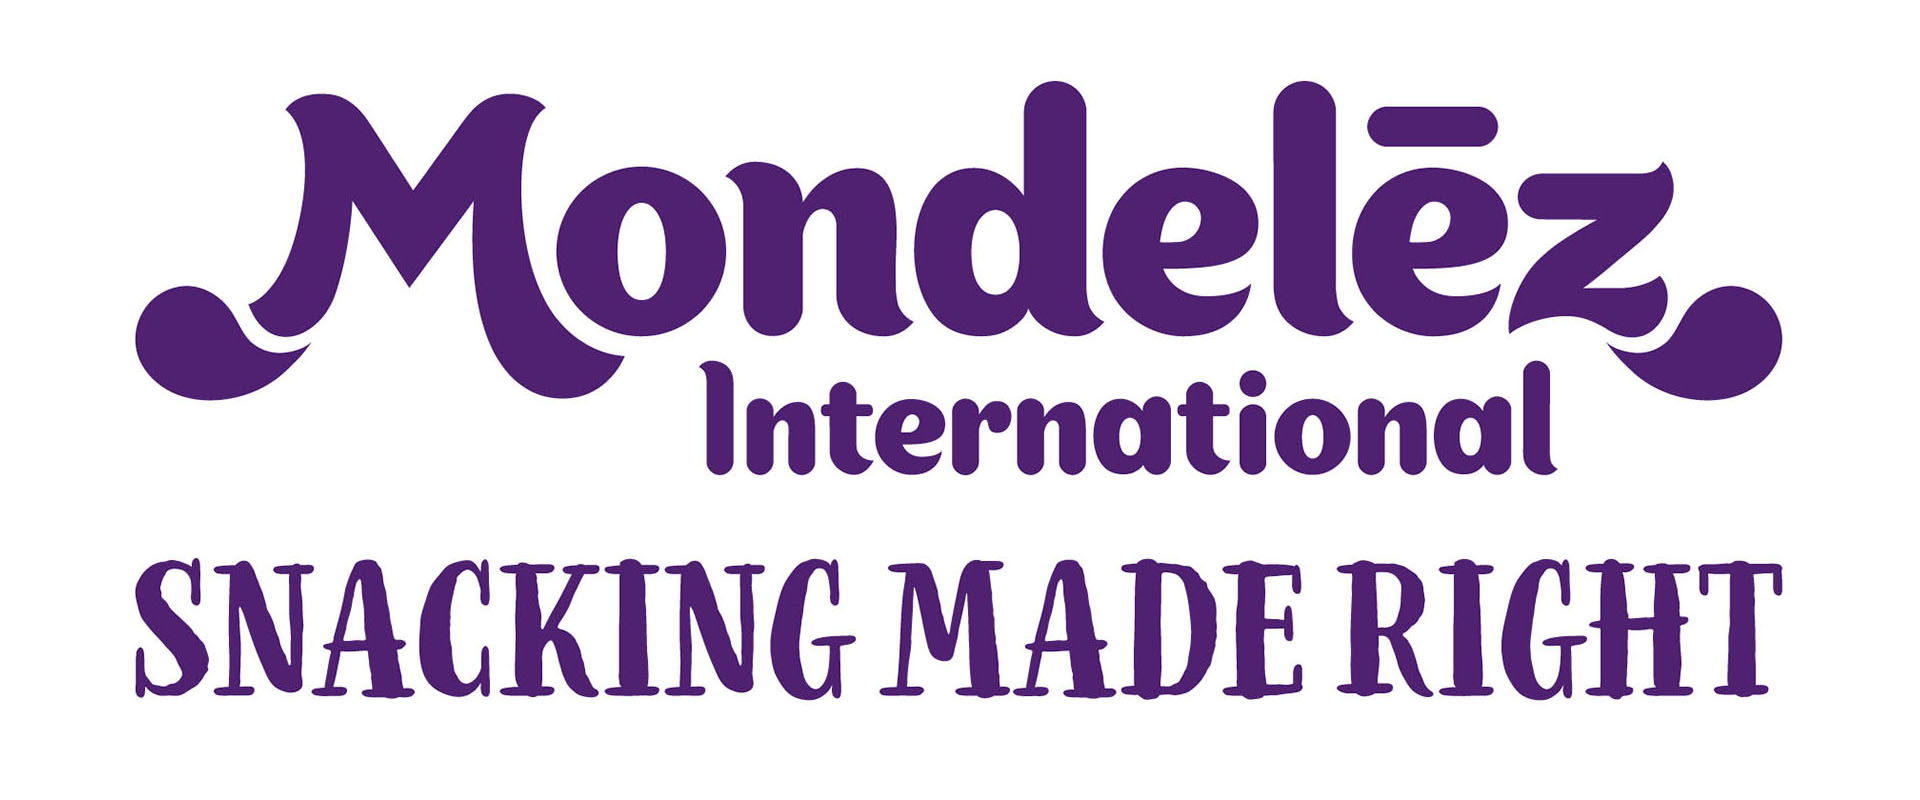 Mondelez Logo PNG - 175559